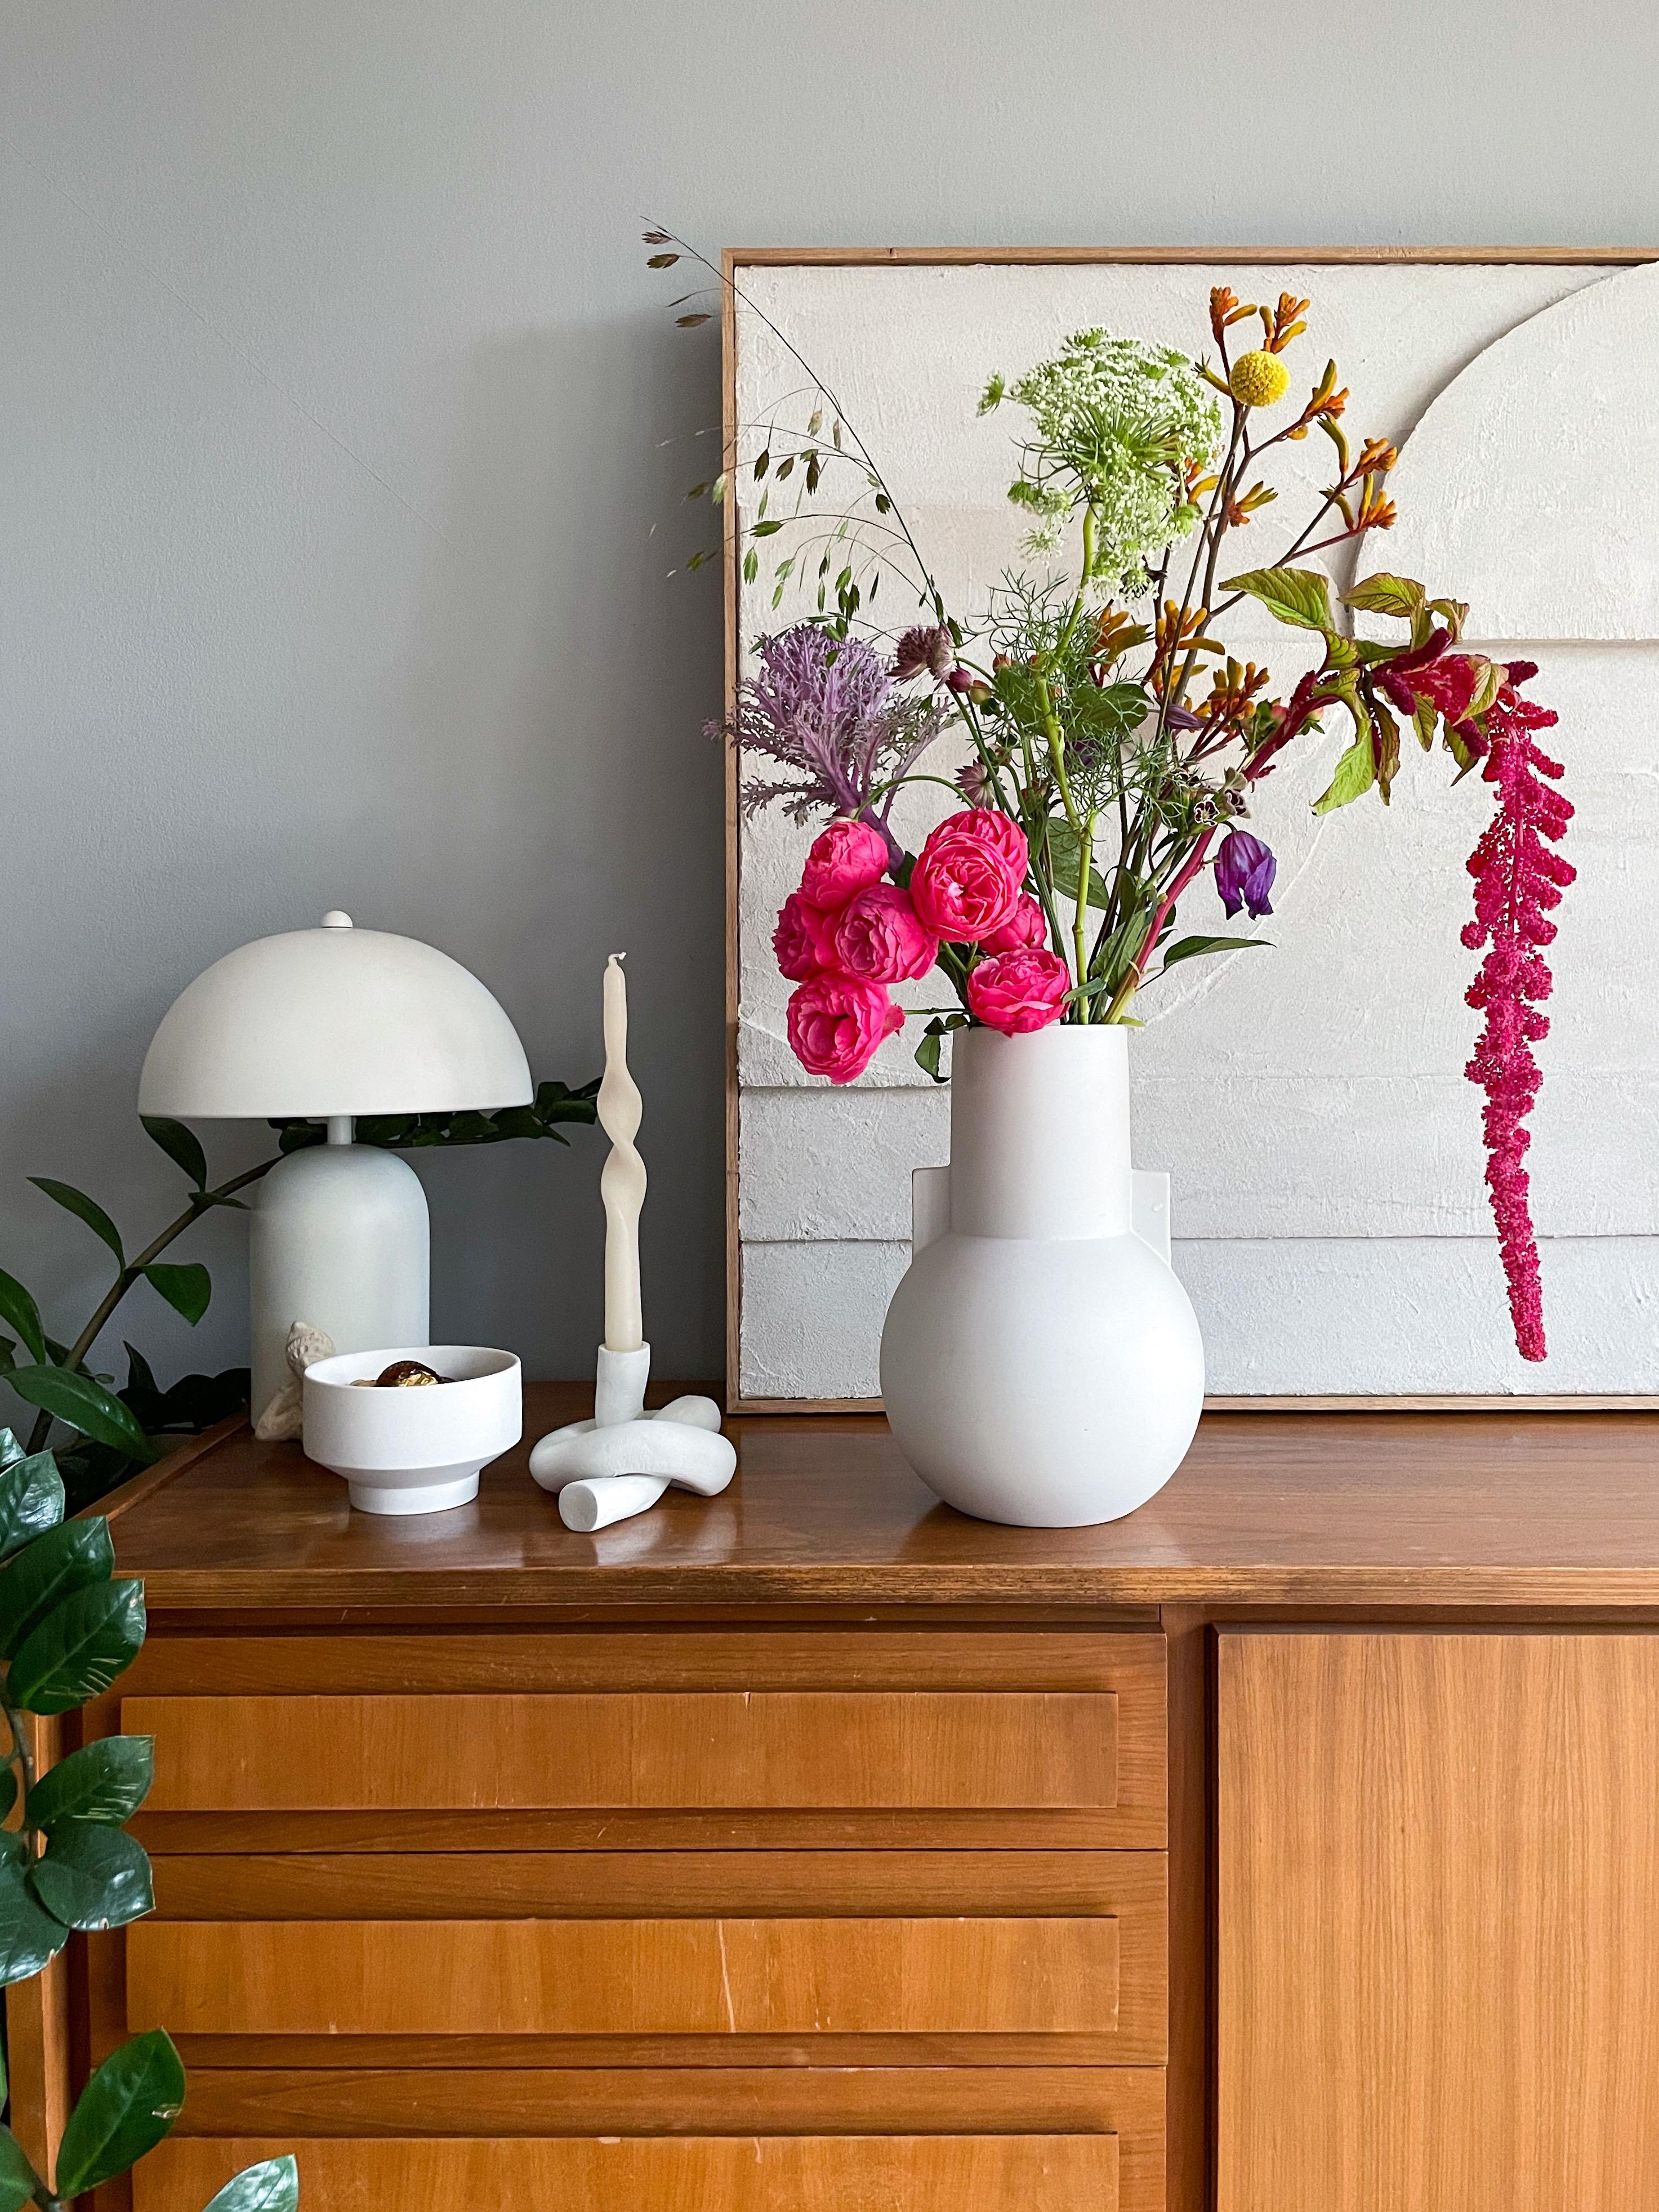 Fresh, fresh, flowers ...

#Blumen #Blumenvase #Blumenstrauß #Vase #Wohnzimmer #Sideboard